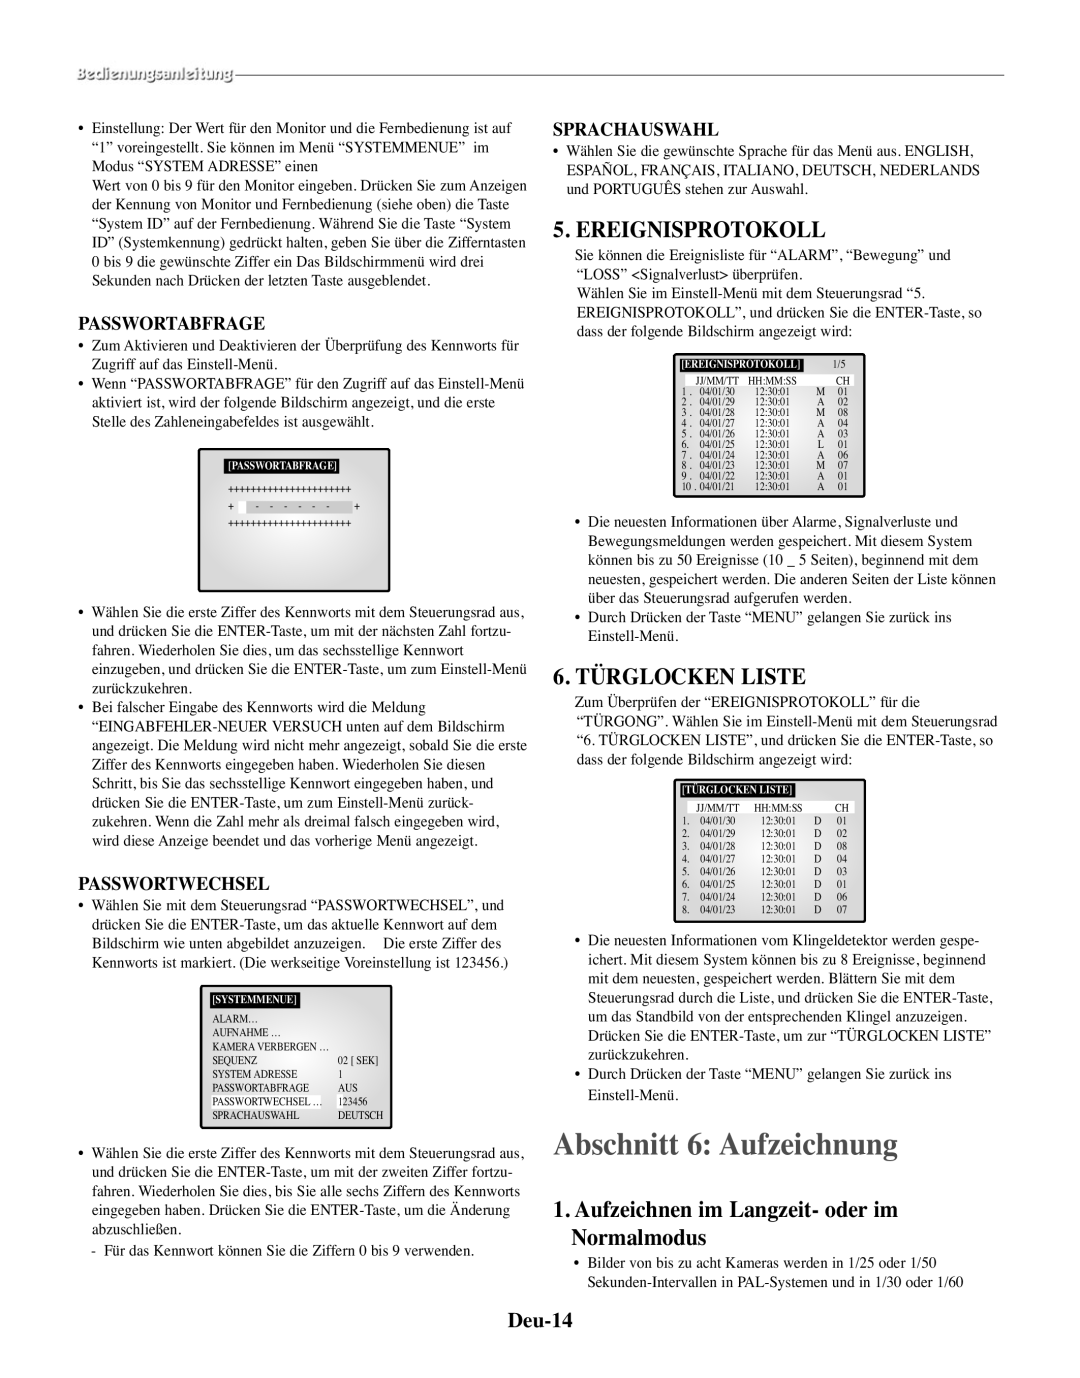 Samsung SMO-210TRP manual Abschnitt 6 Aufzeichnung, Ereignisprotokoll, 6. TÜRGLOCKEN LISTE, Deu-14, Passwortabfrage 